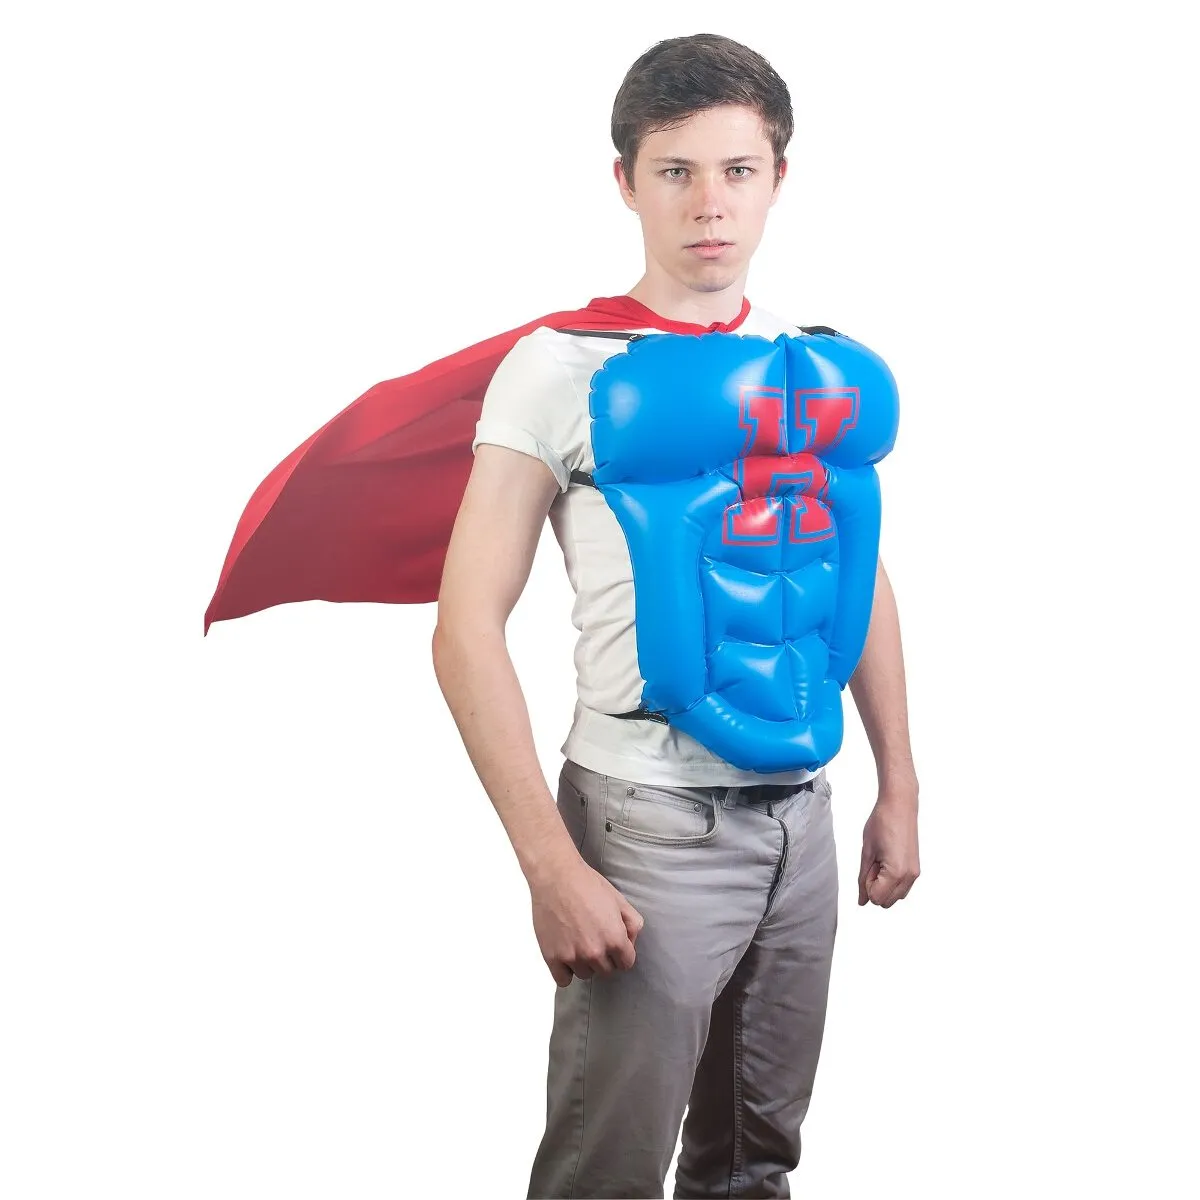 Costume de super-héros